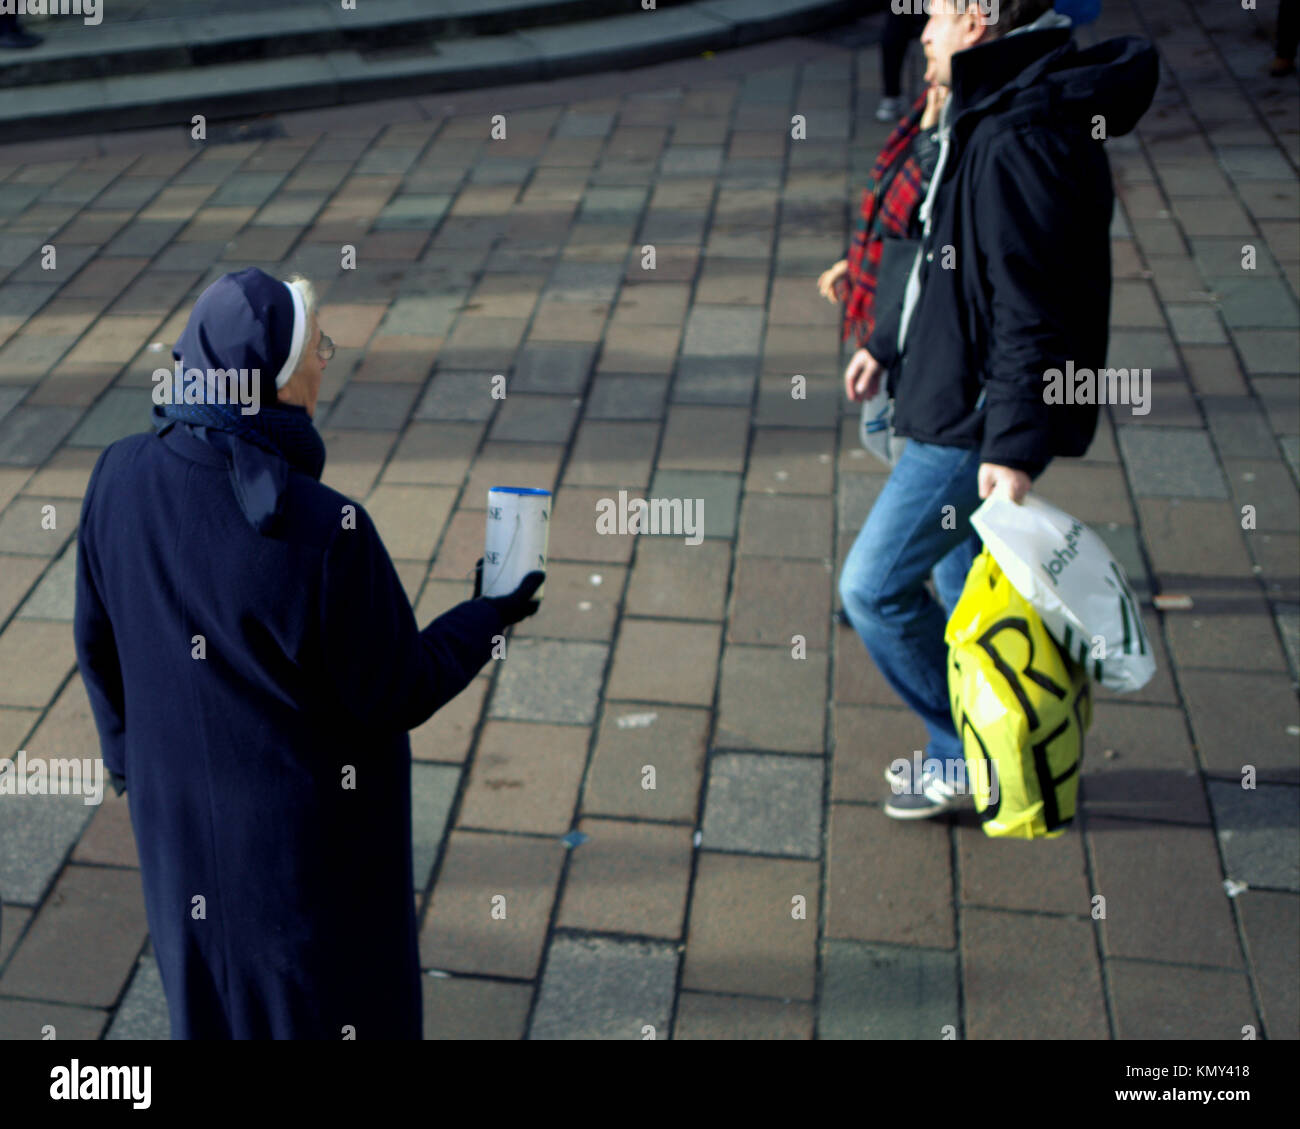 Religieuse catholique sur la rue à la recherche de don de bienfaisance peut secouer les passants par la ville de Glasgow, Ecosse, Royaume-Uni Banque D'Images